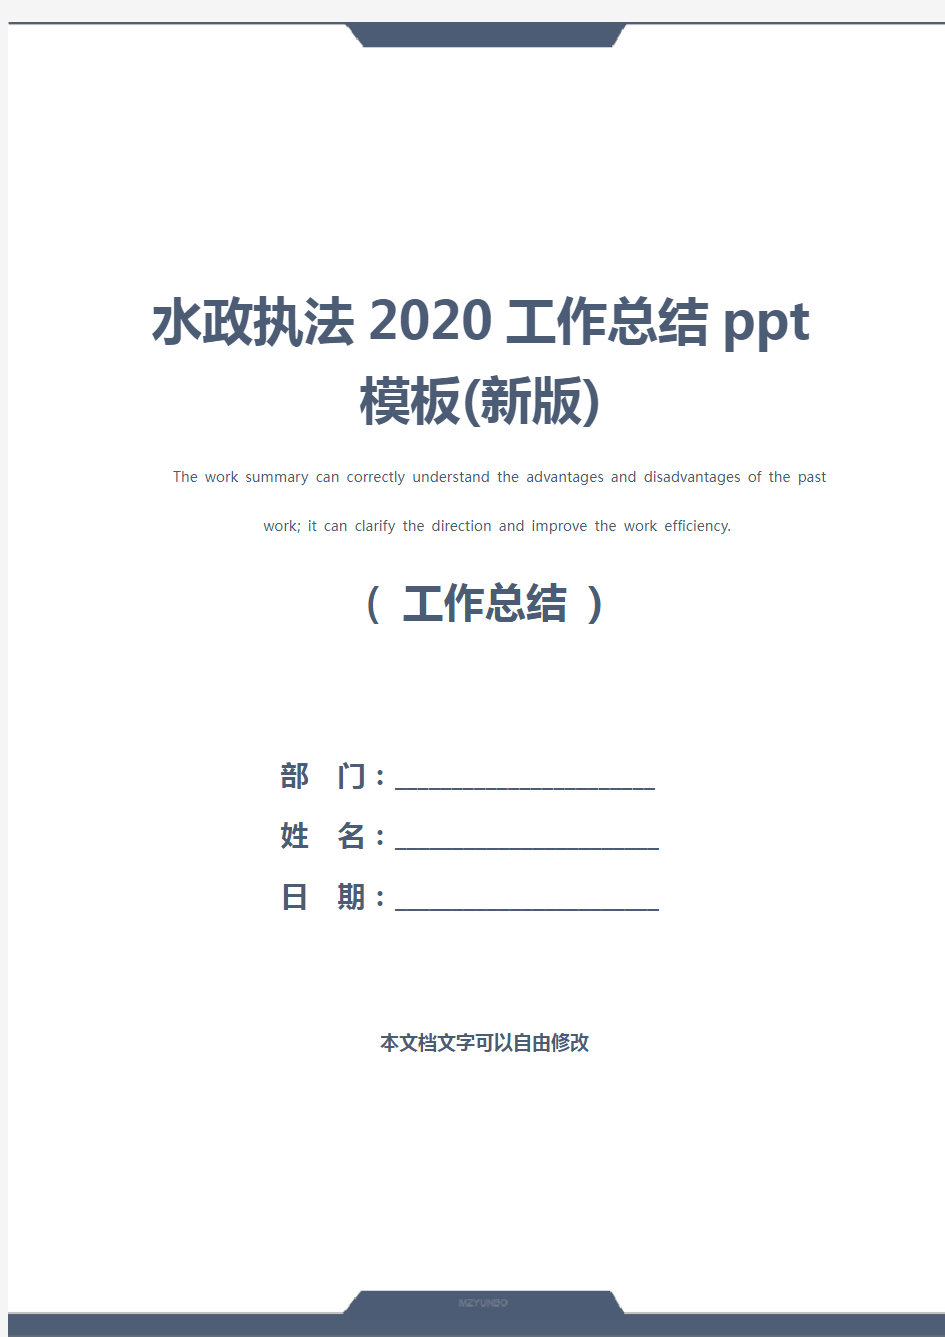 水政执法2020工作总结ppt模板(新版)